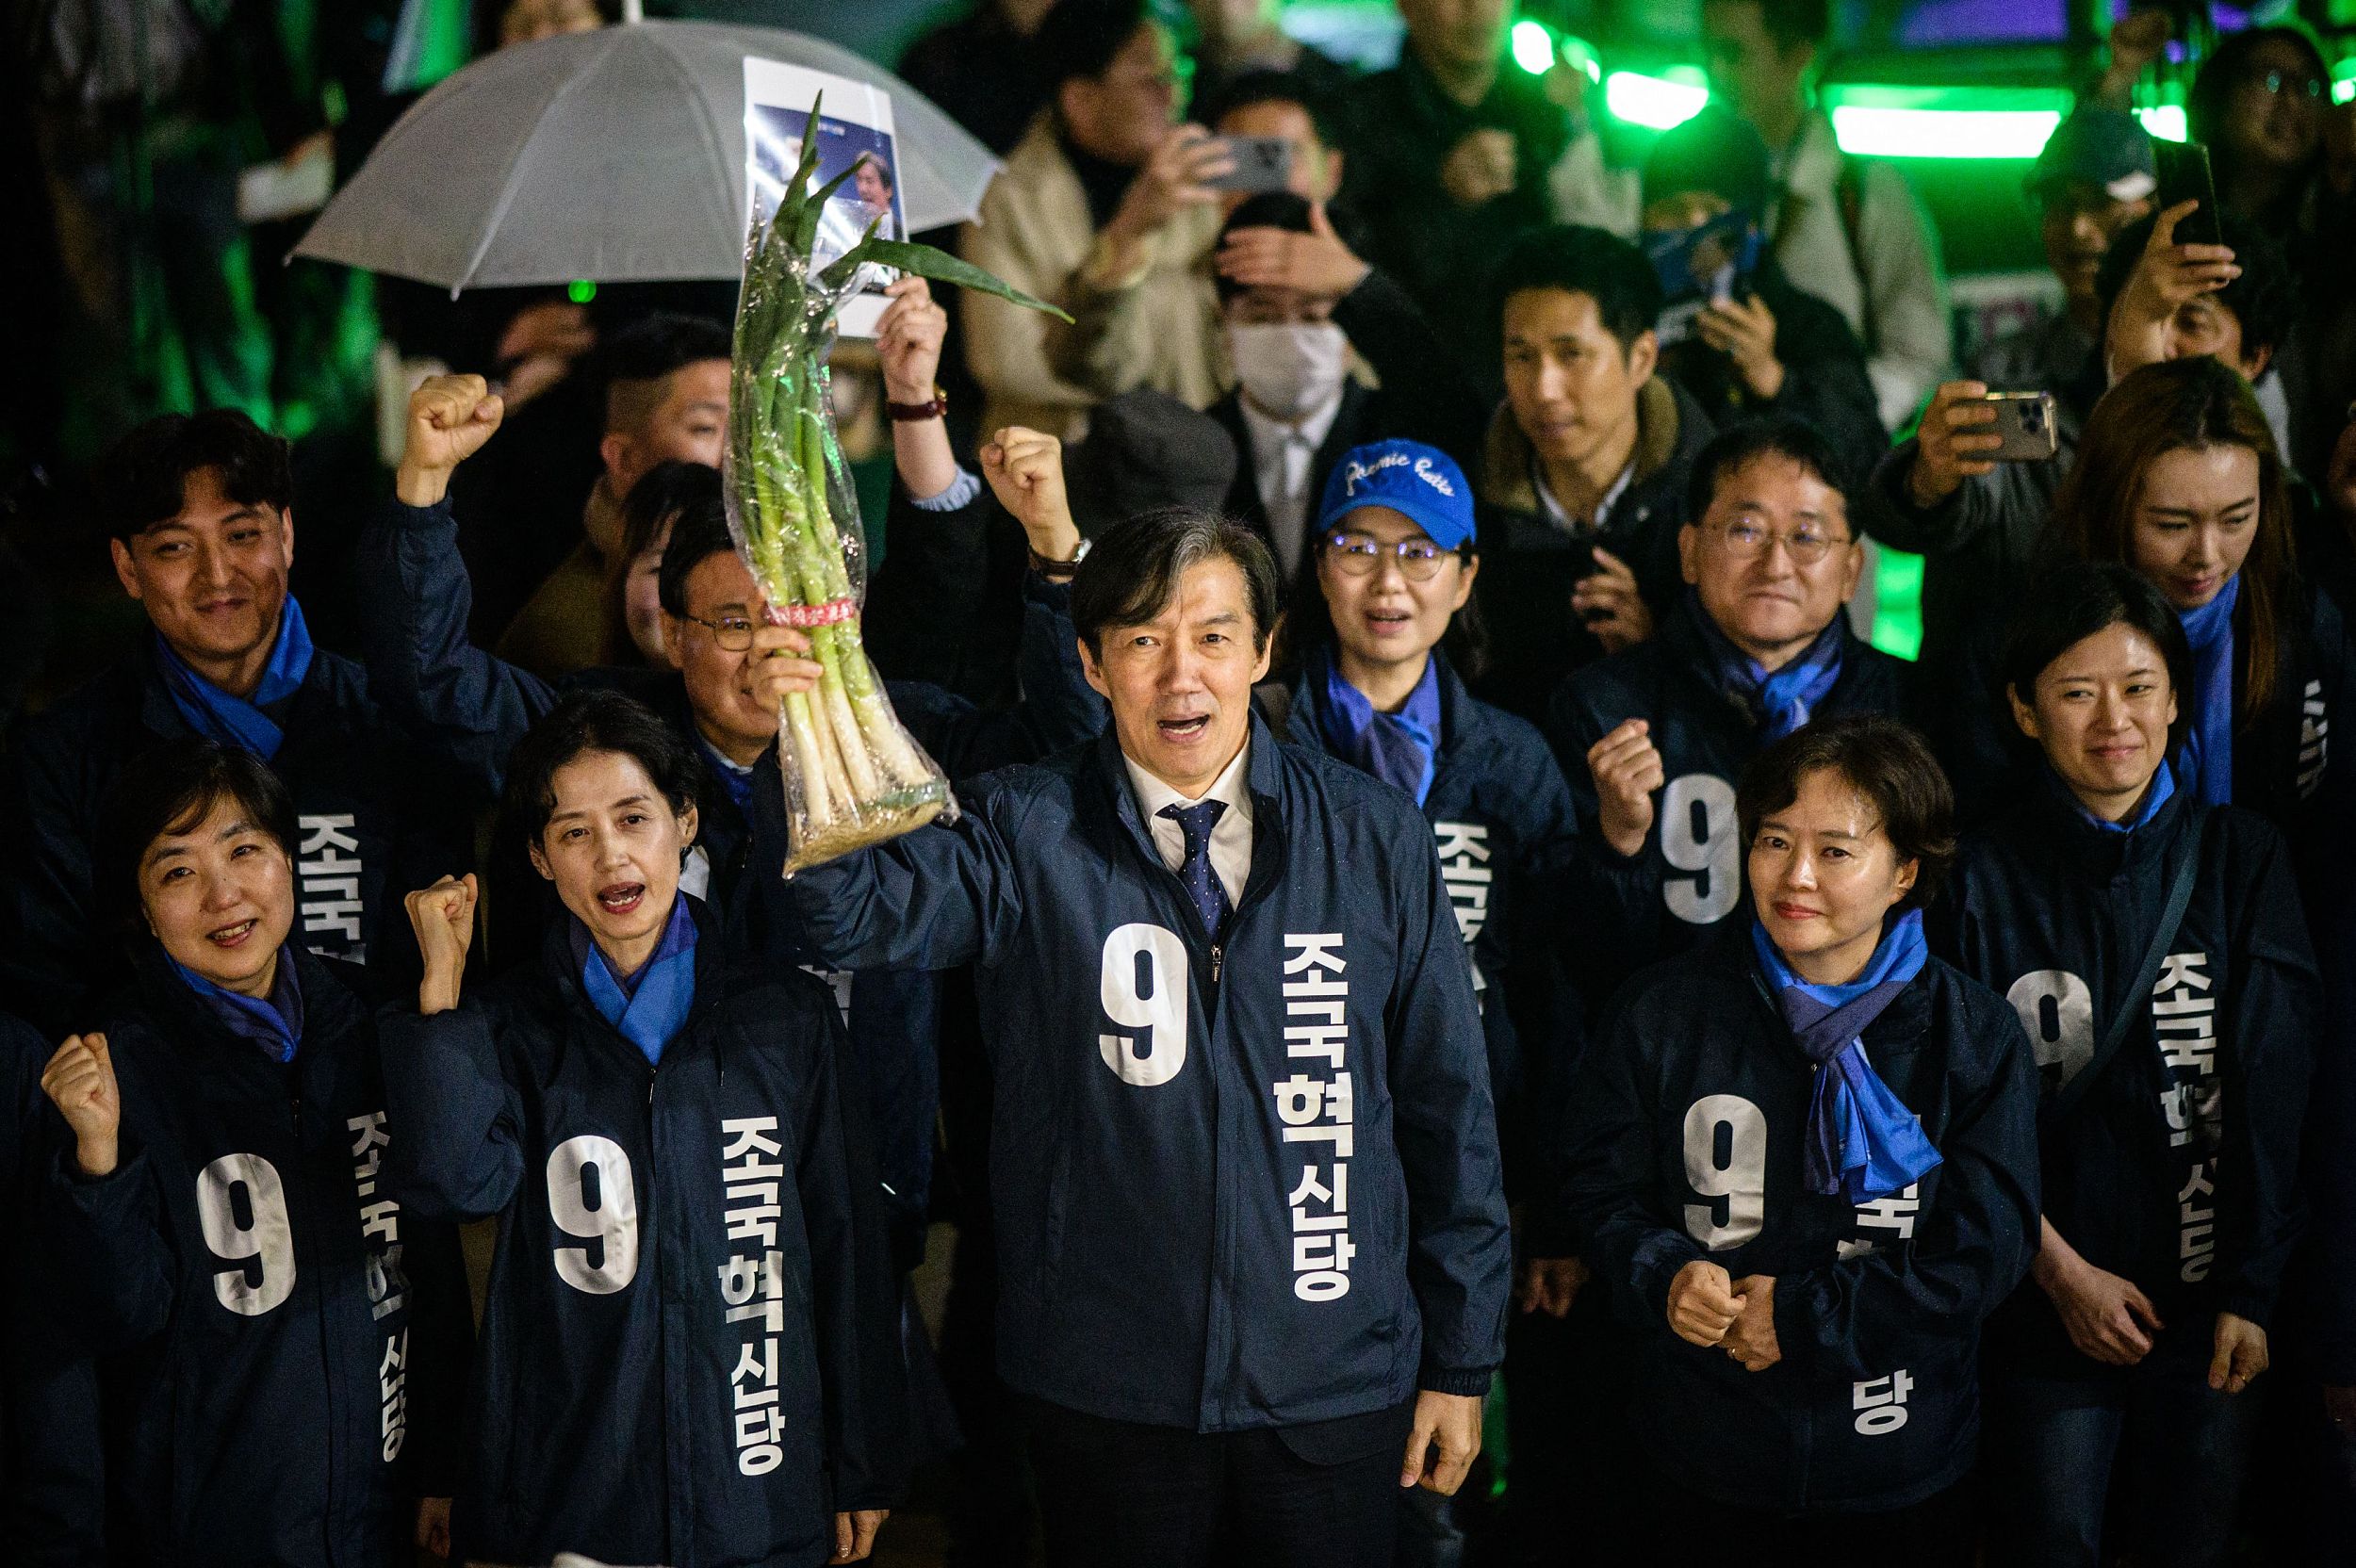 韩国国会议员图片